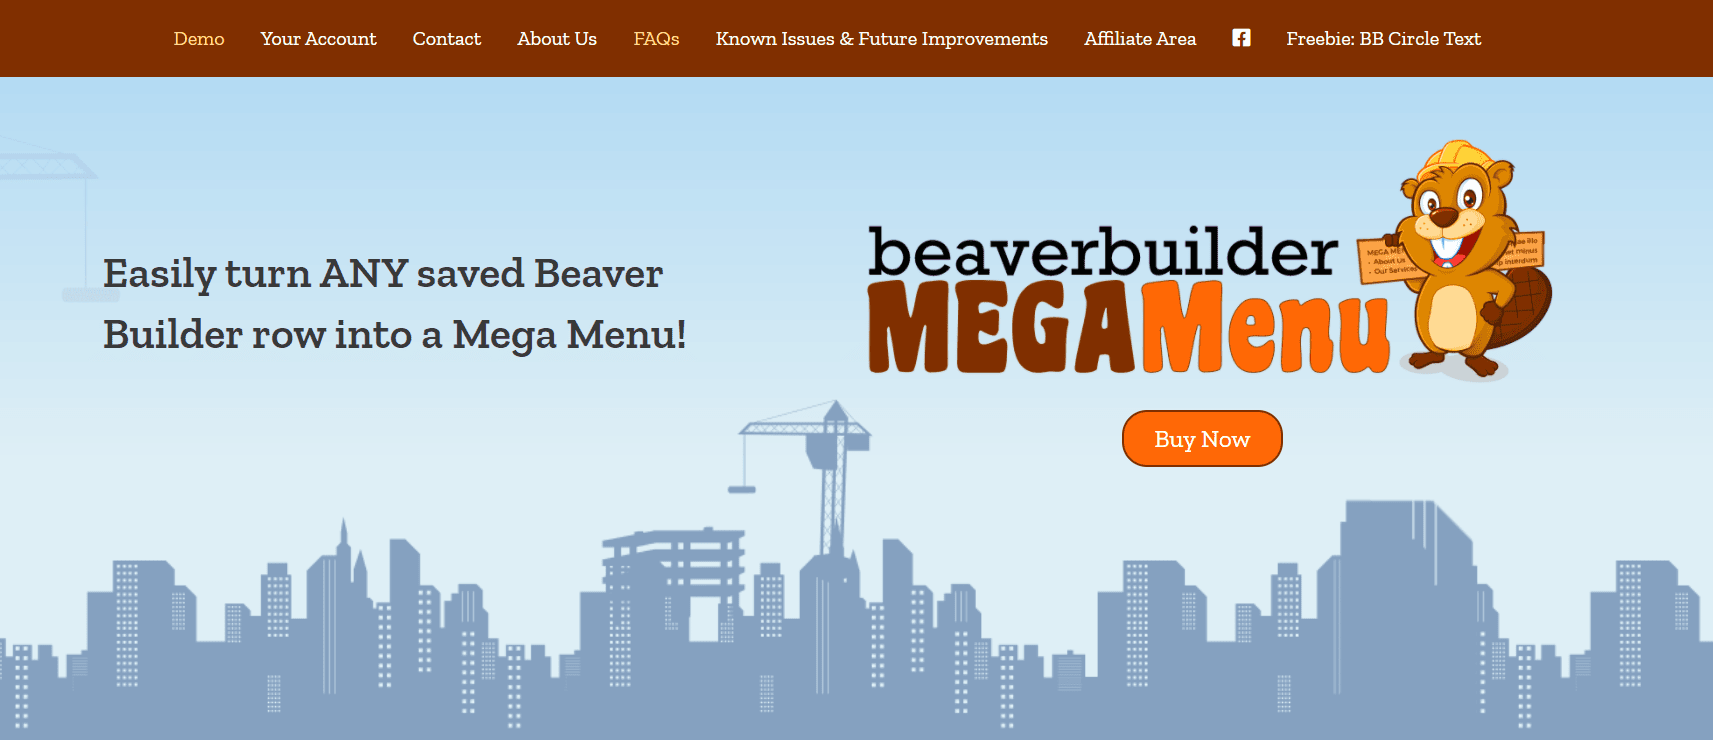 Beaver Builder Mega Menu Overview